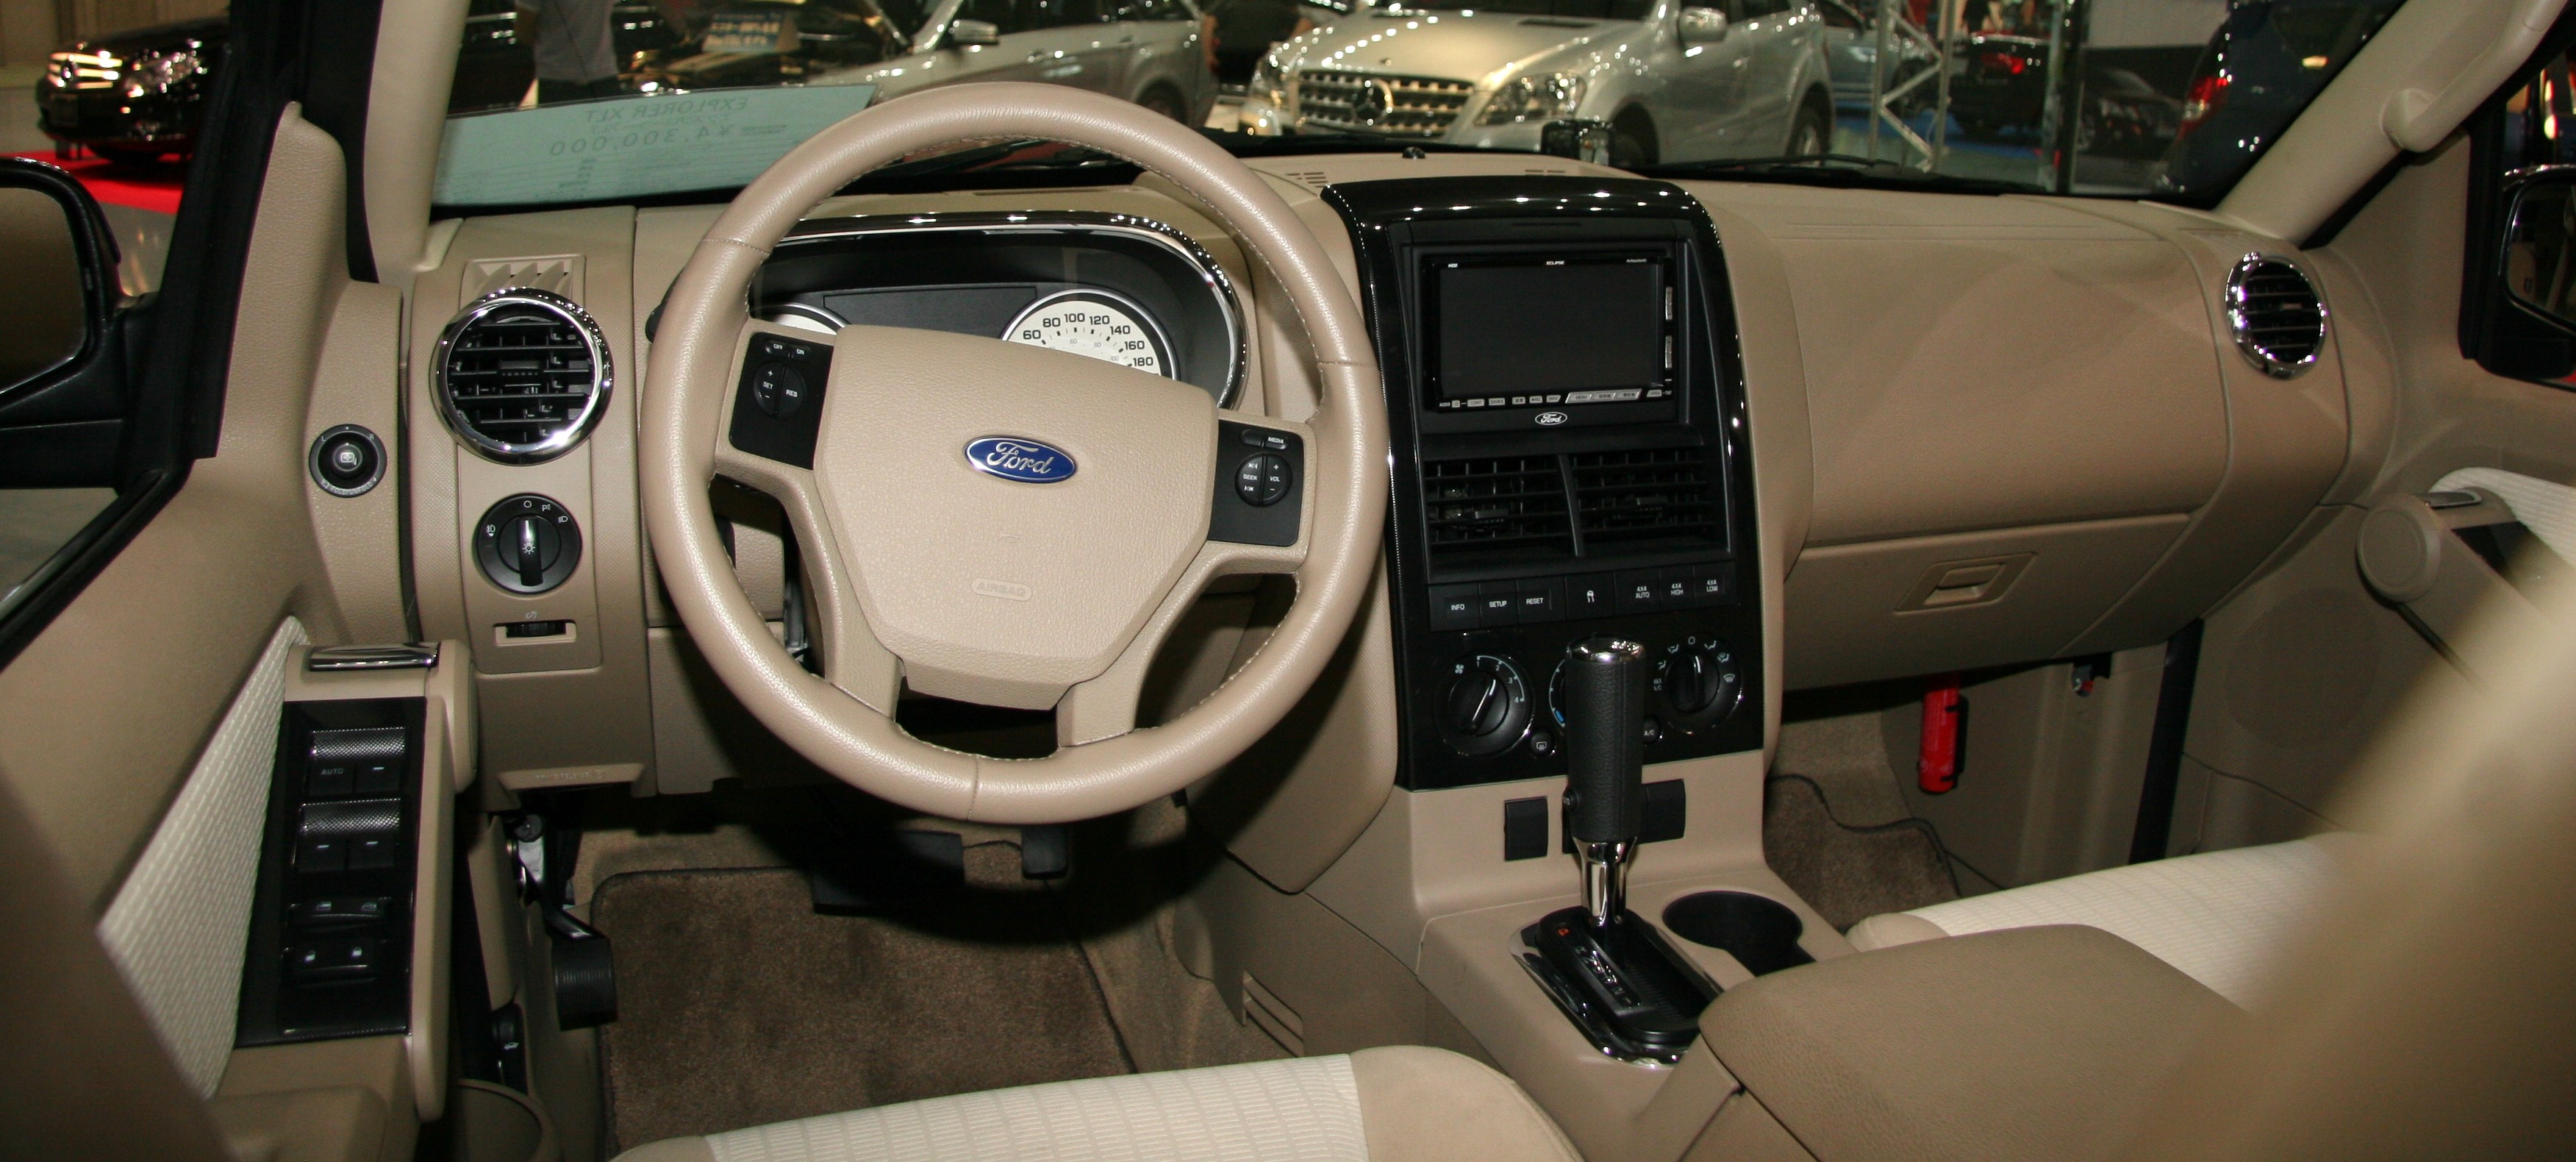 Размер колёс на Ford Explorer 2010